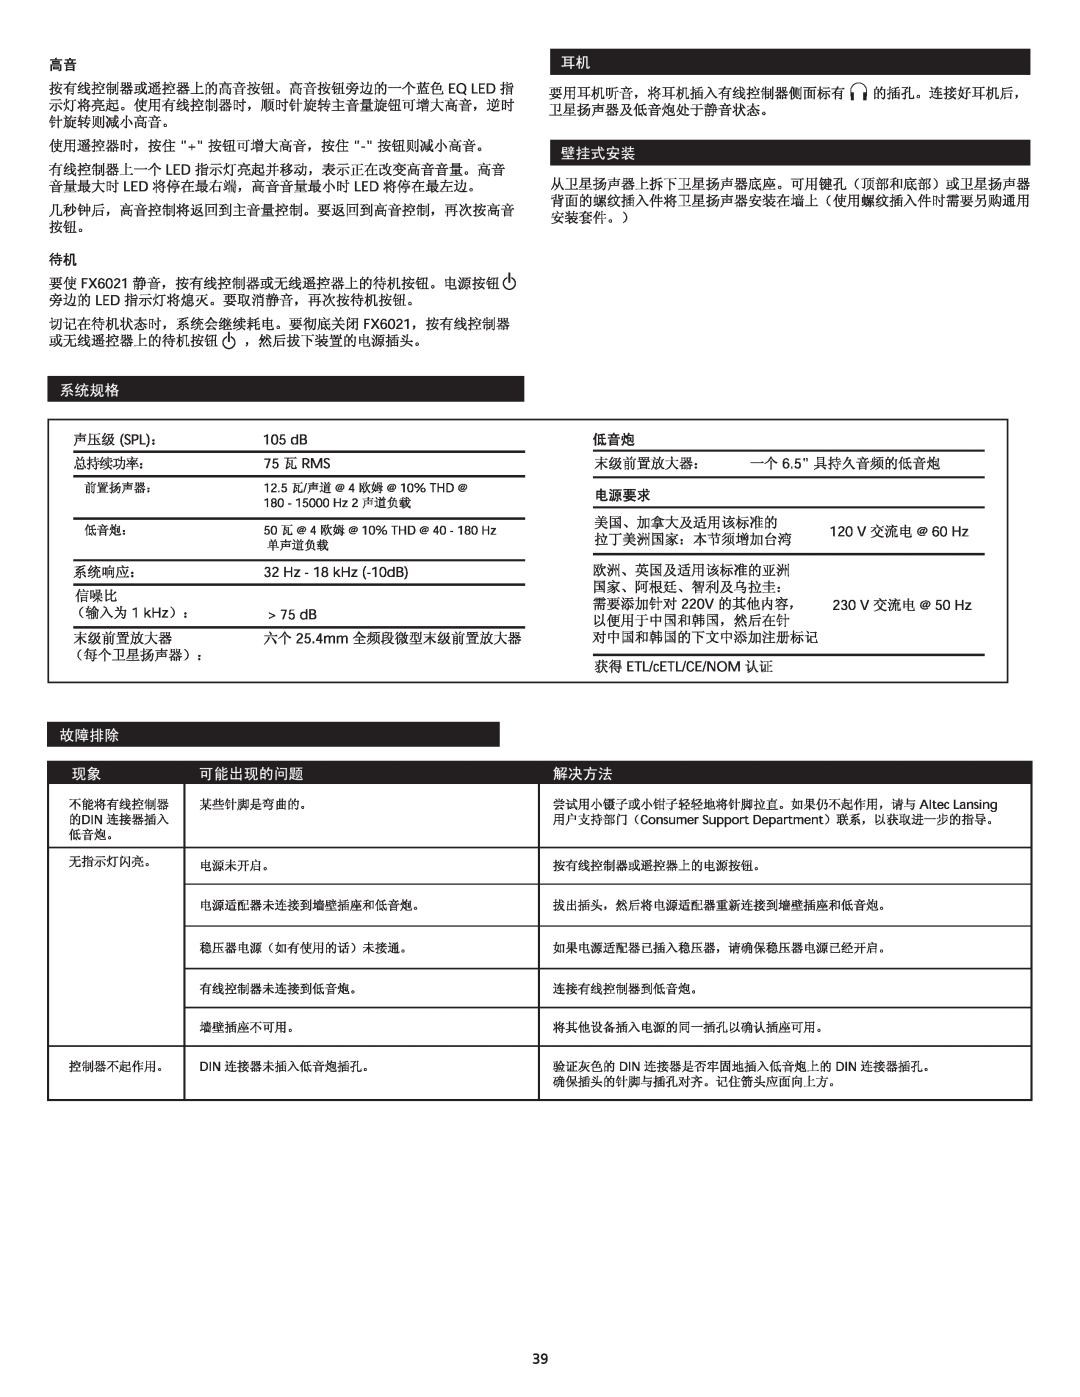 Altec Lansing FX6021 manual 